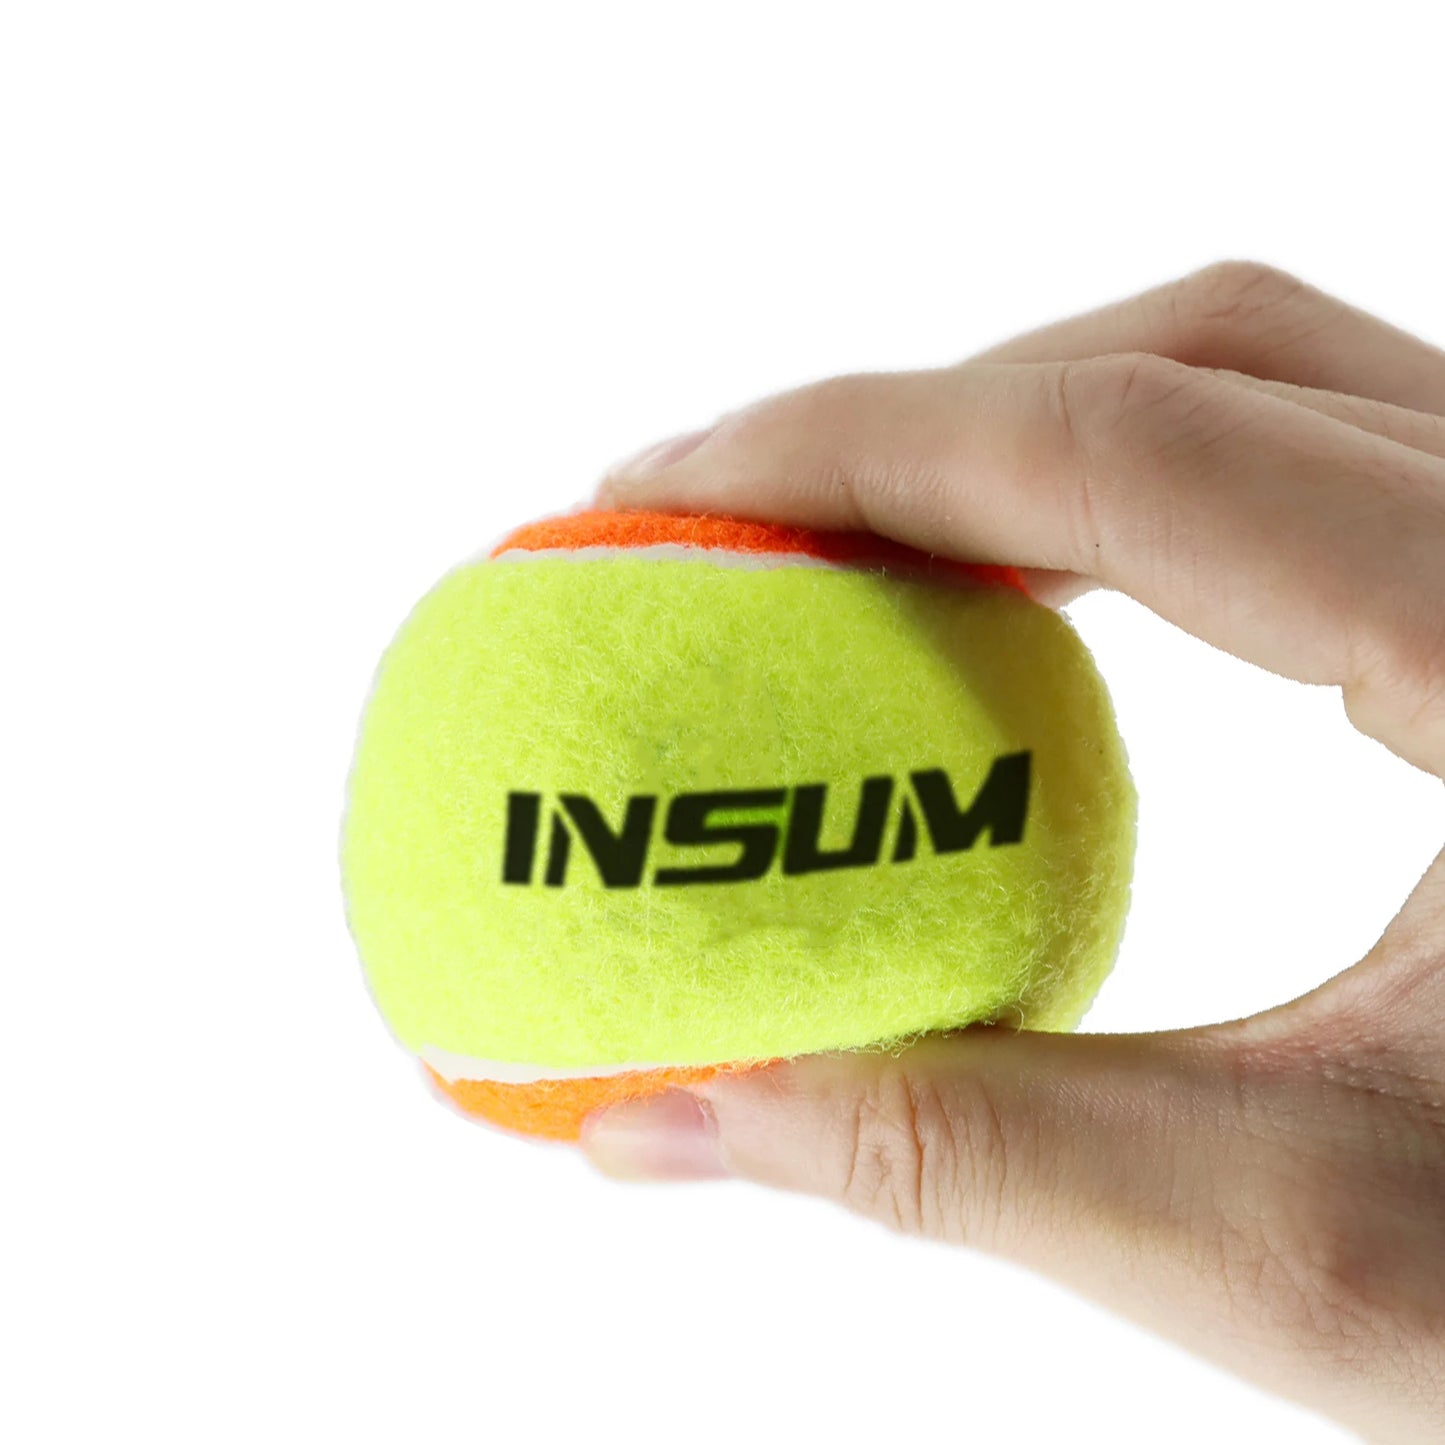 16er-Pack Tennis-Trainingsbälle